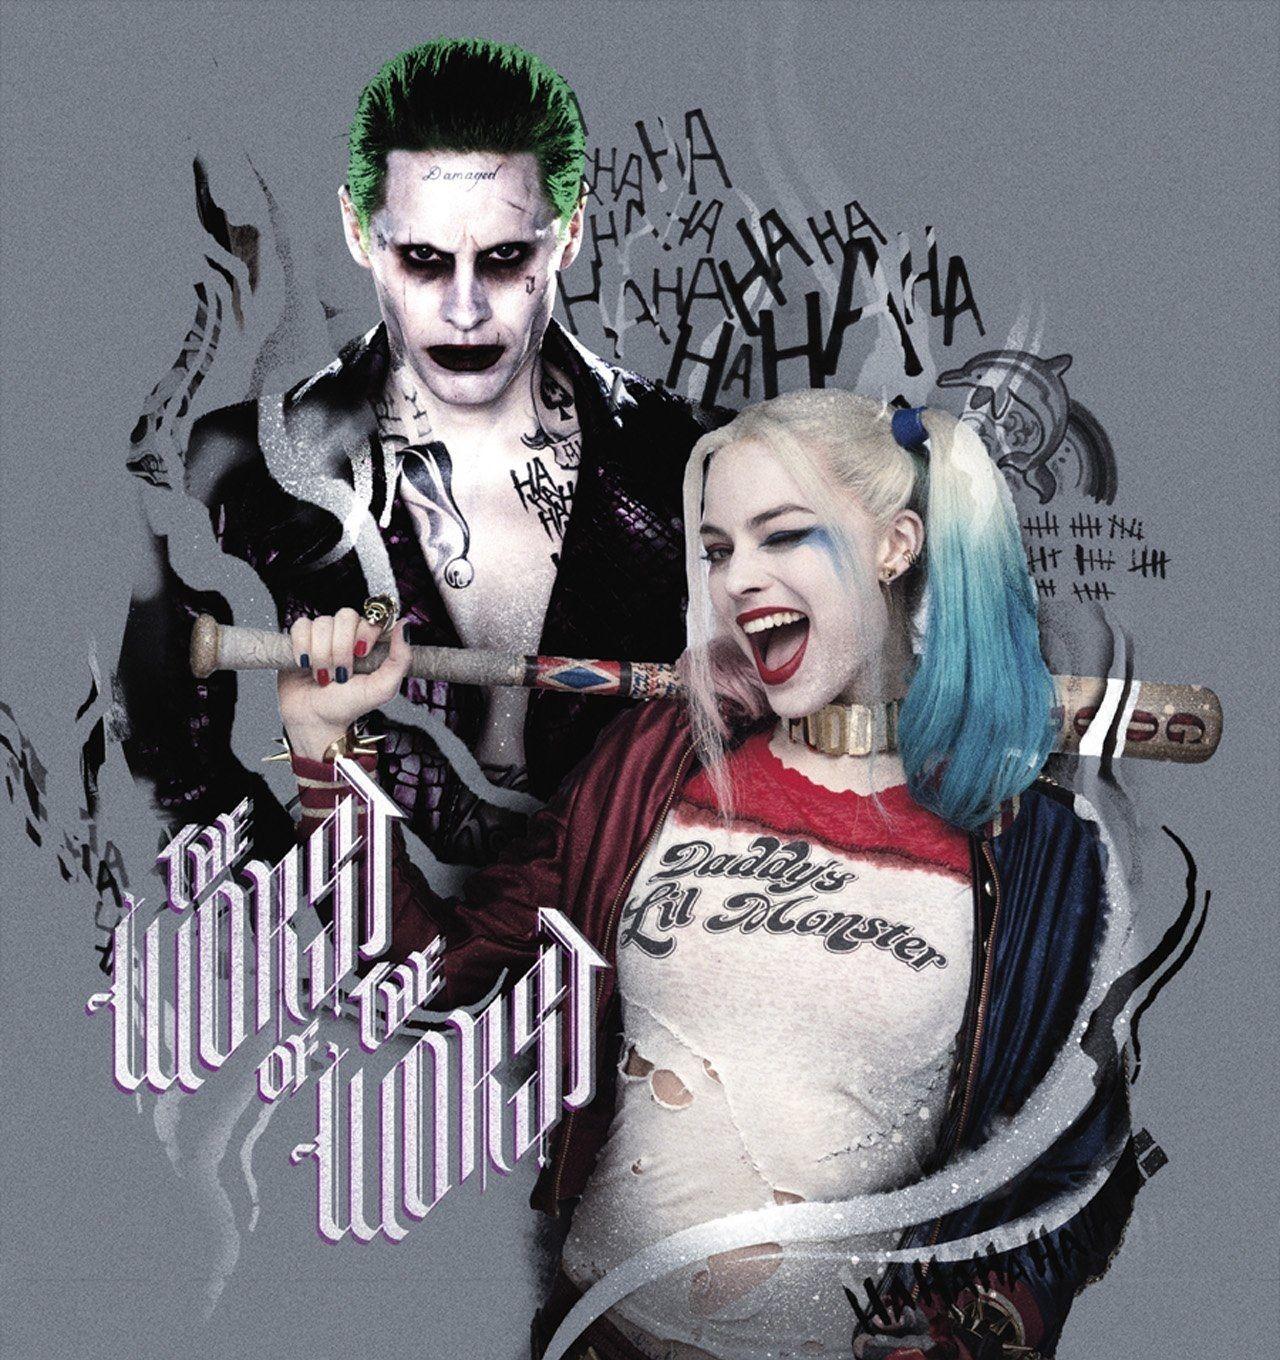 35 Gambar Wallpaper Joker and Harley Quinn terbaru 2020